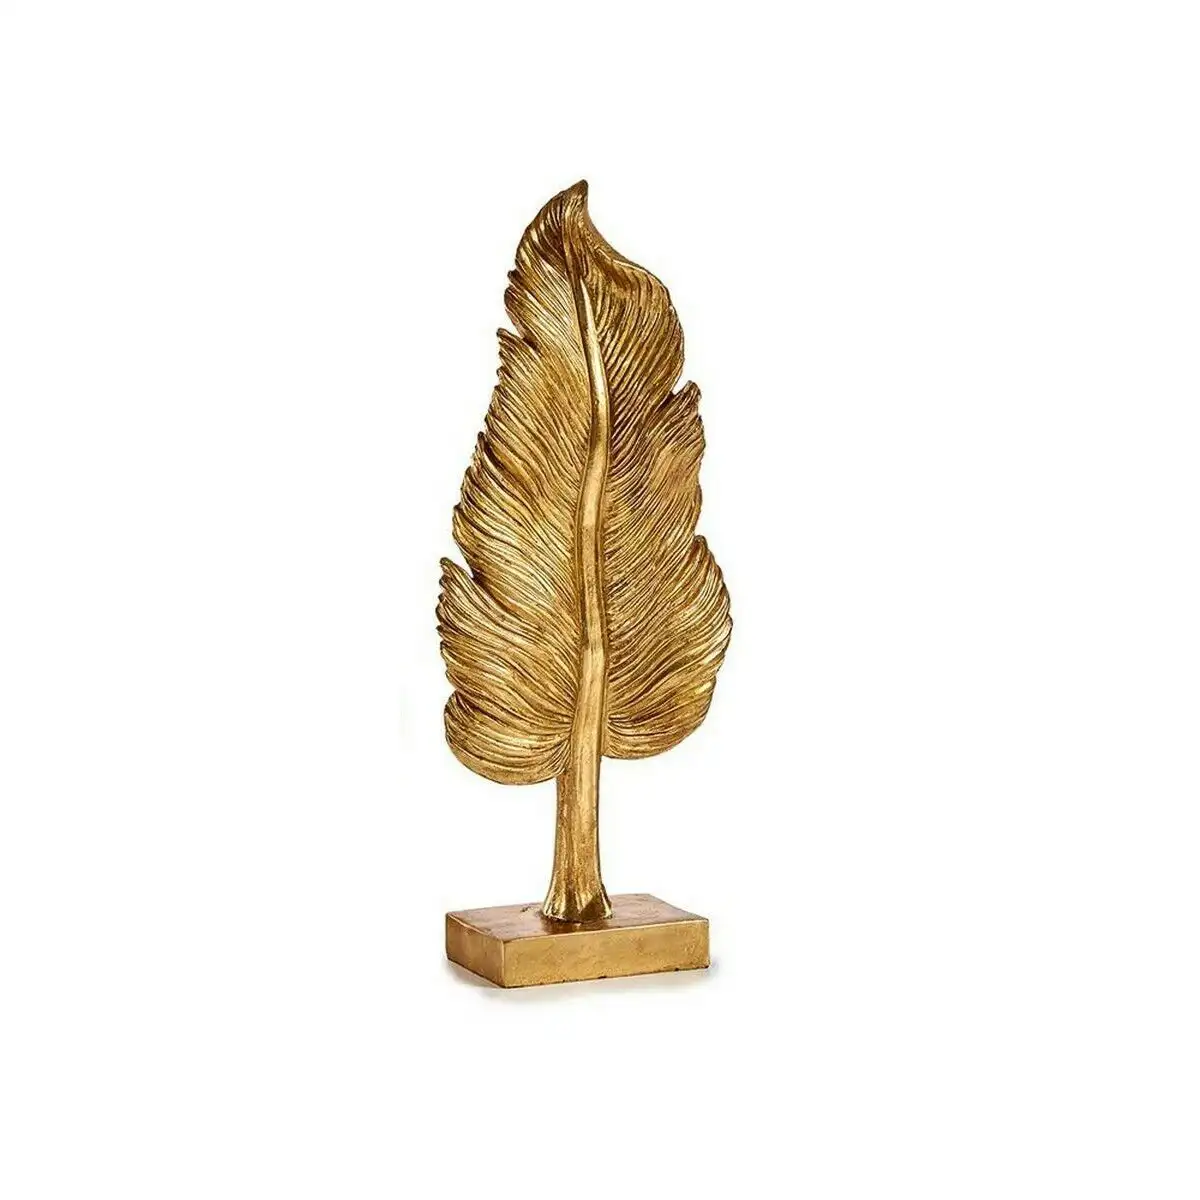 Figurine decorative plume 8 x 43 5 x 12 cm dore resine_5099. Bienvenue sur DIAYTAR SENEGAL - Votre Galerie Shopping Personnalisée. Découvrez un monde de produits diversifiés qui expriment votre style unique et votre passion pour la qualité.